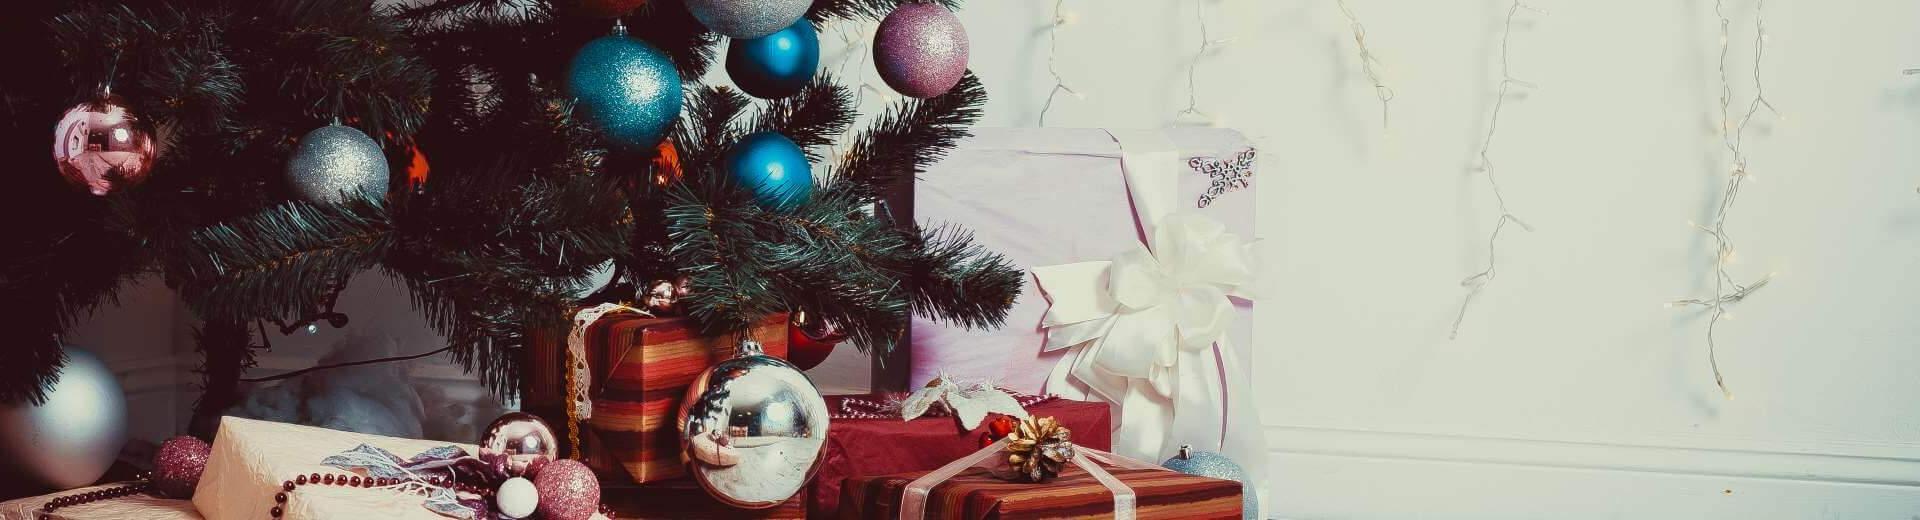 Weihnachten im Ferienhaus in Slowenien | Casamundo - Casamundo